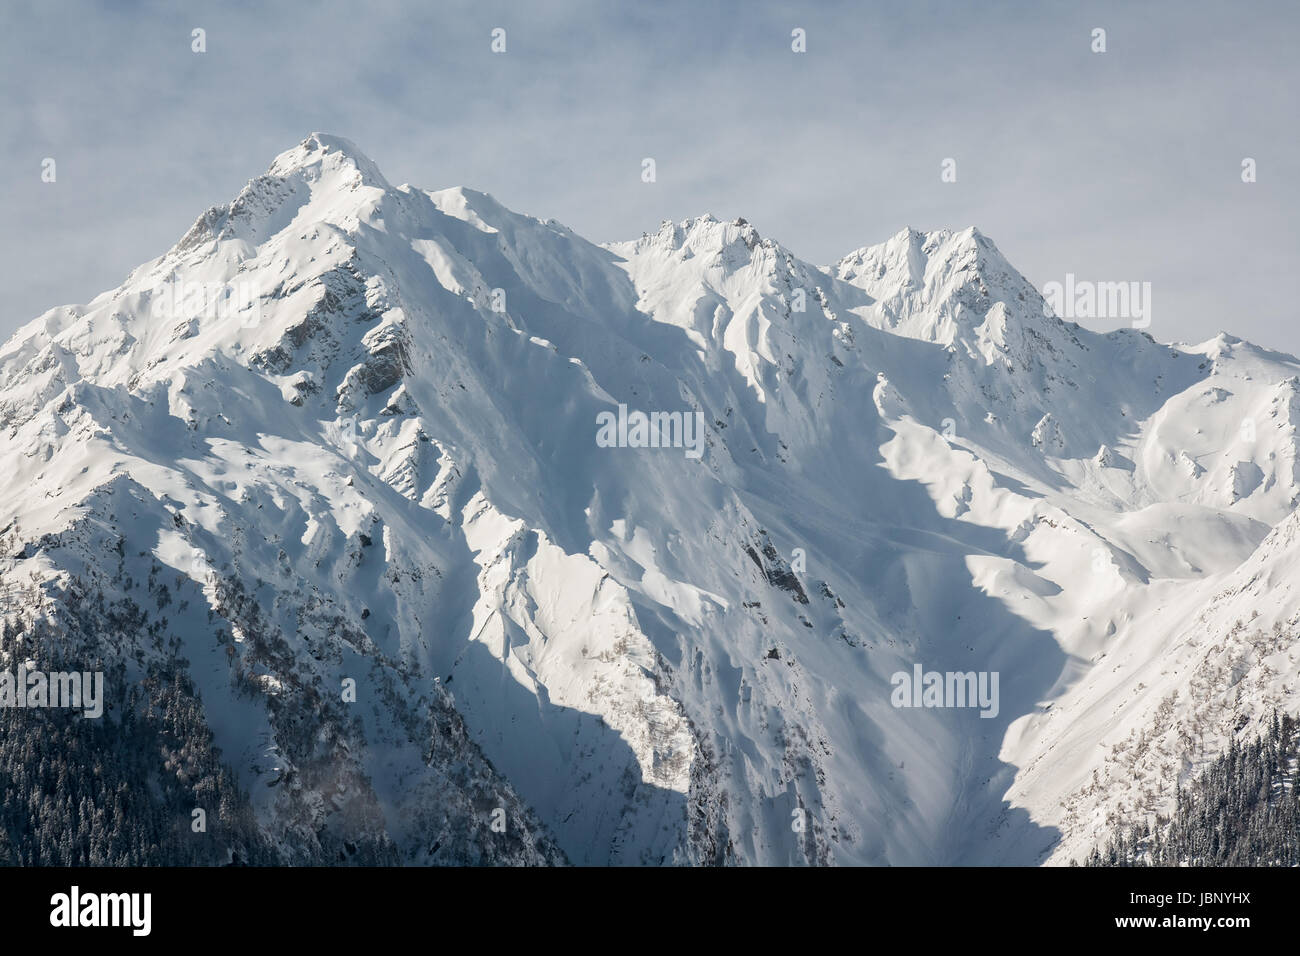 Paesaggio invernale foto e close-up immagine di un Titanic Himalayan mountain range durante la stagione invernale con il bianco delle montagne coperte di neve e foreste di conifere Foto Stock